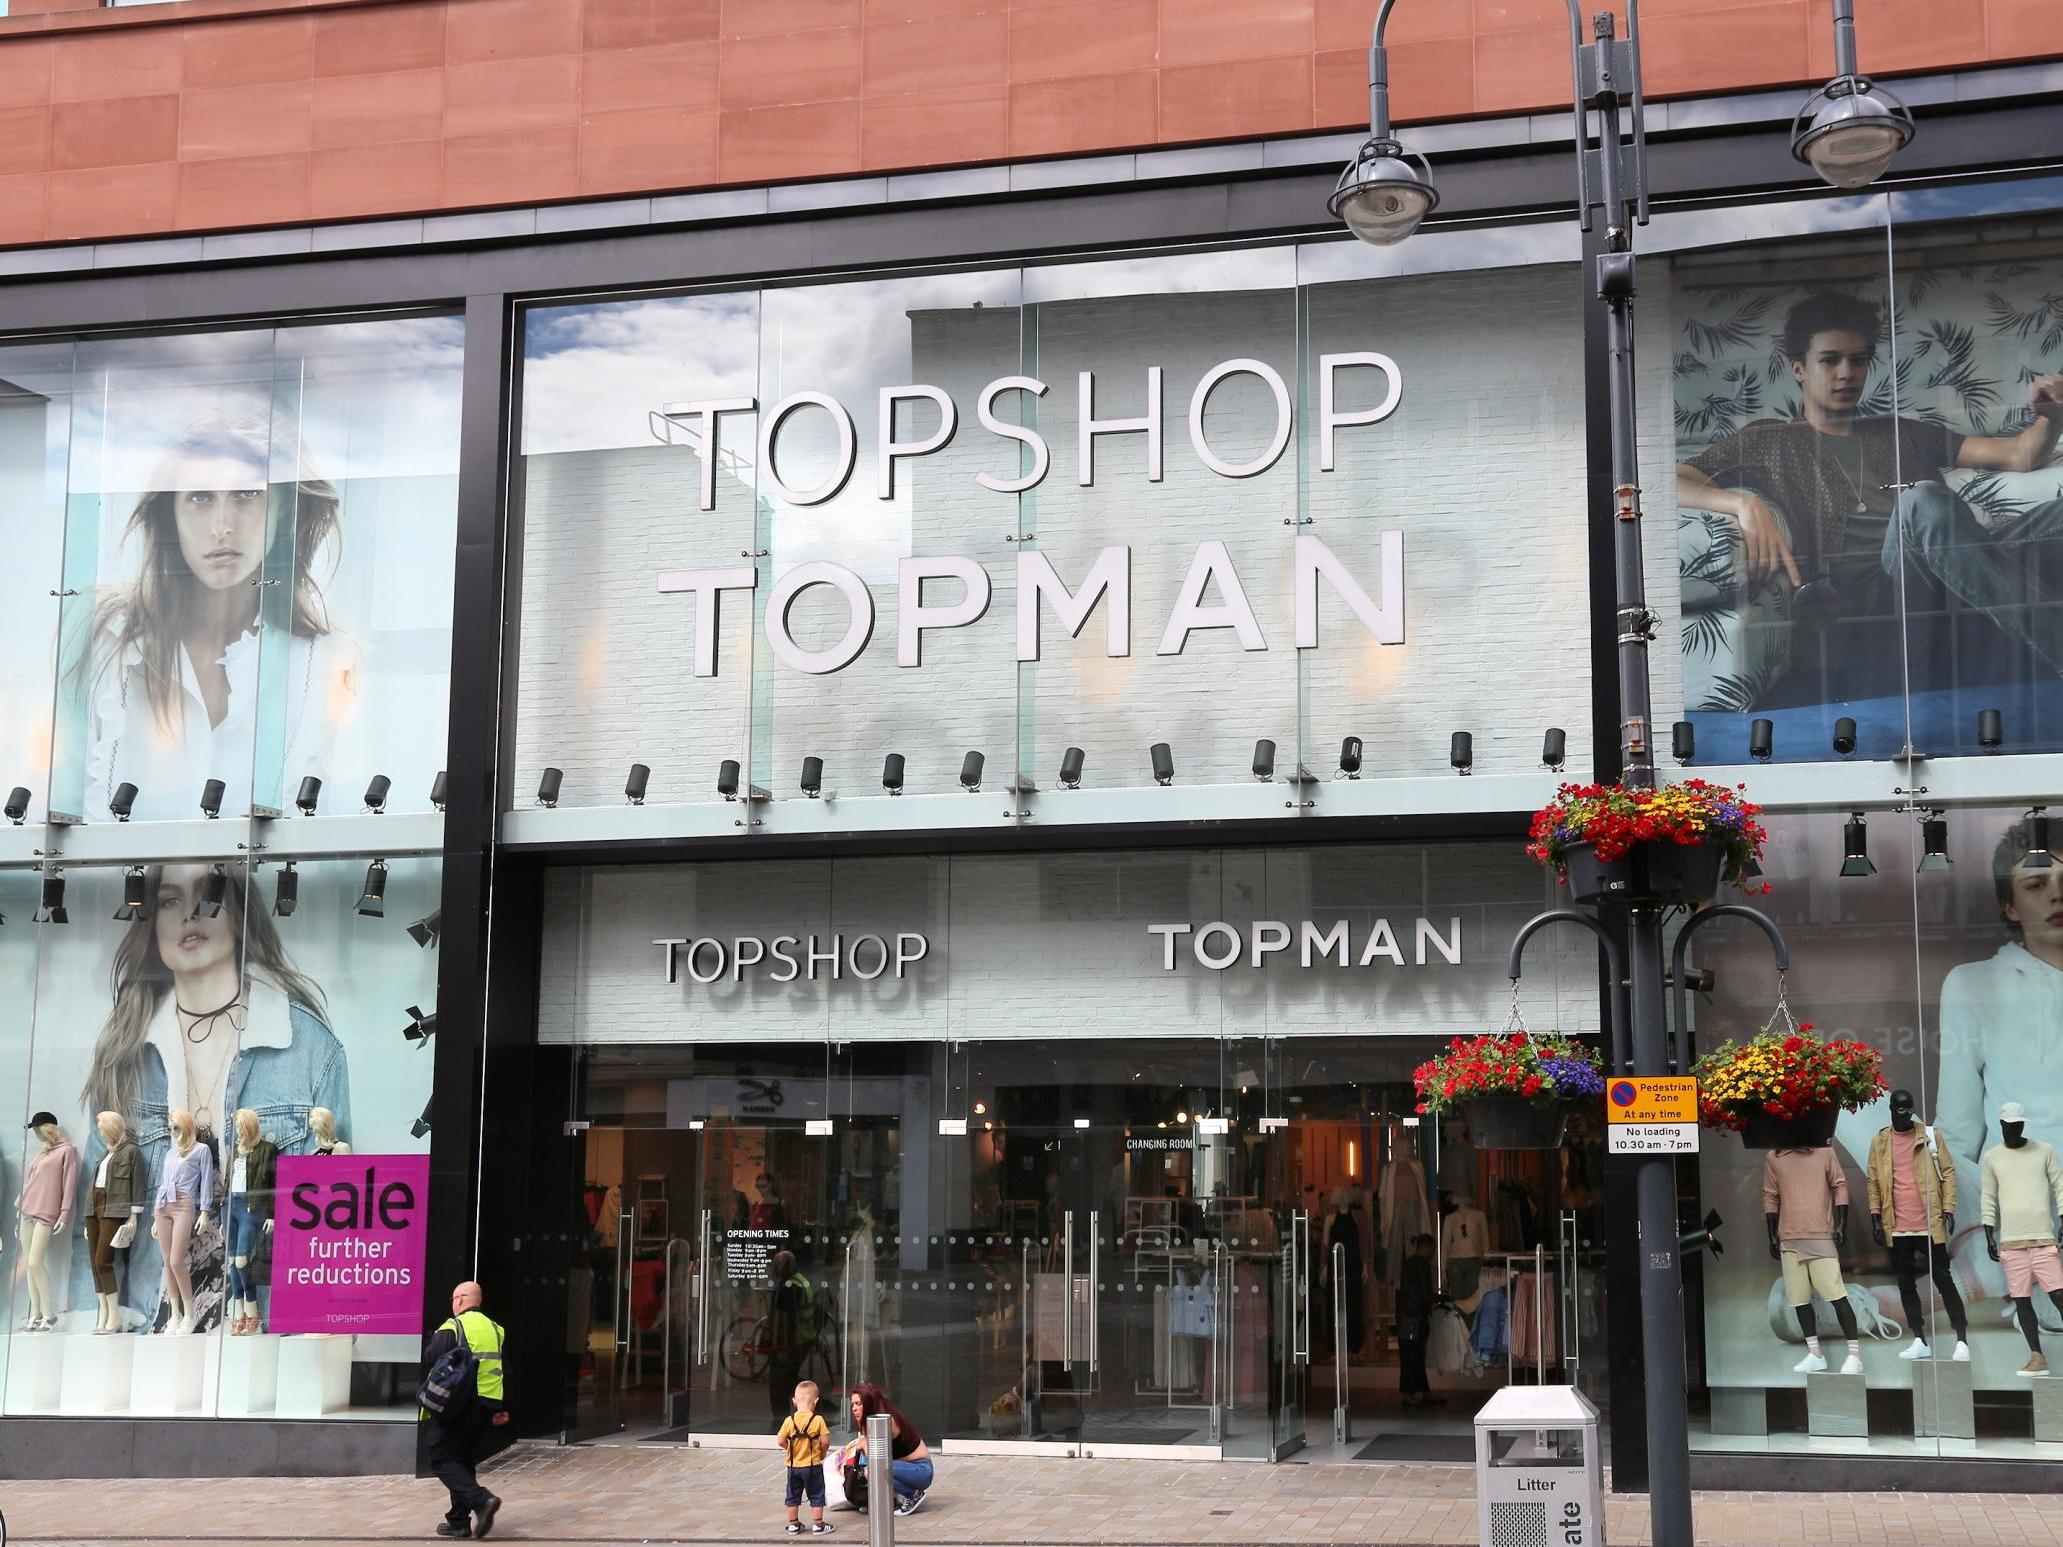 A Topshop Topman store in Leeds, UK